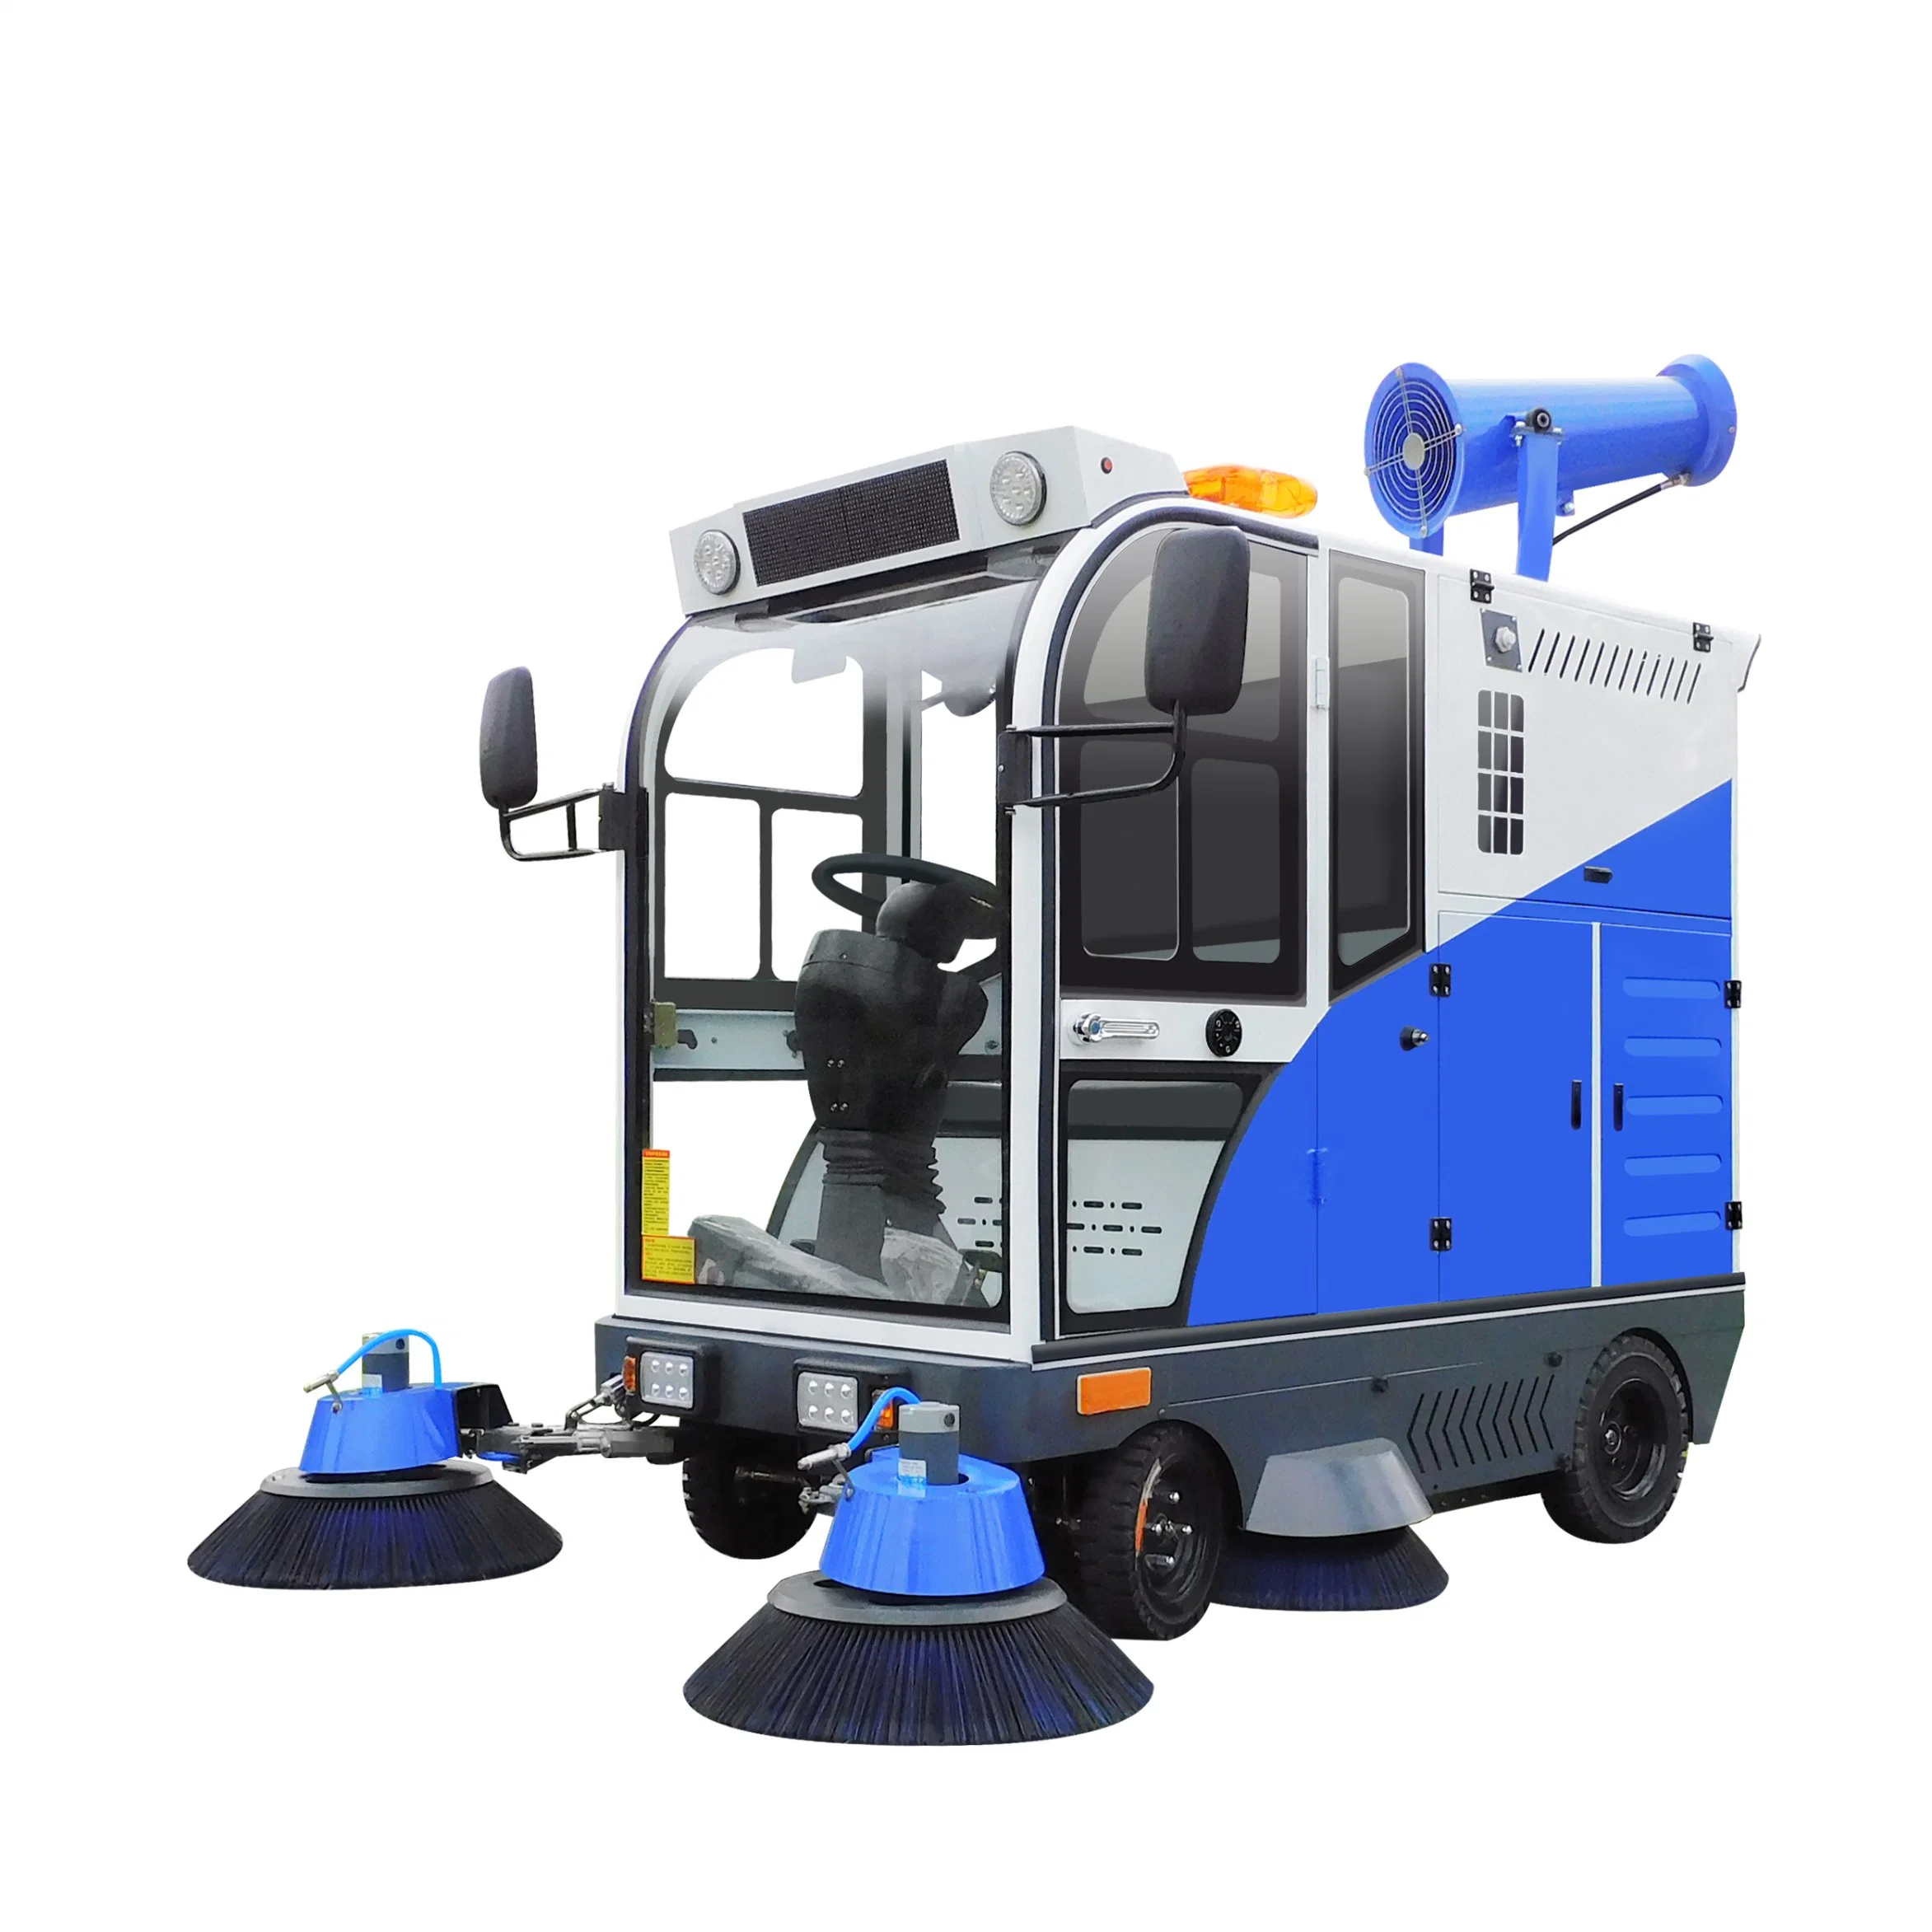 Carro de varrimento de ruas industrial - Máquina de limpeza de ruas - Piso de condução Carro da vassoura